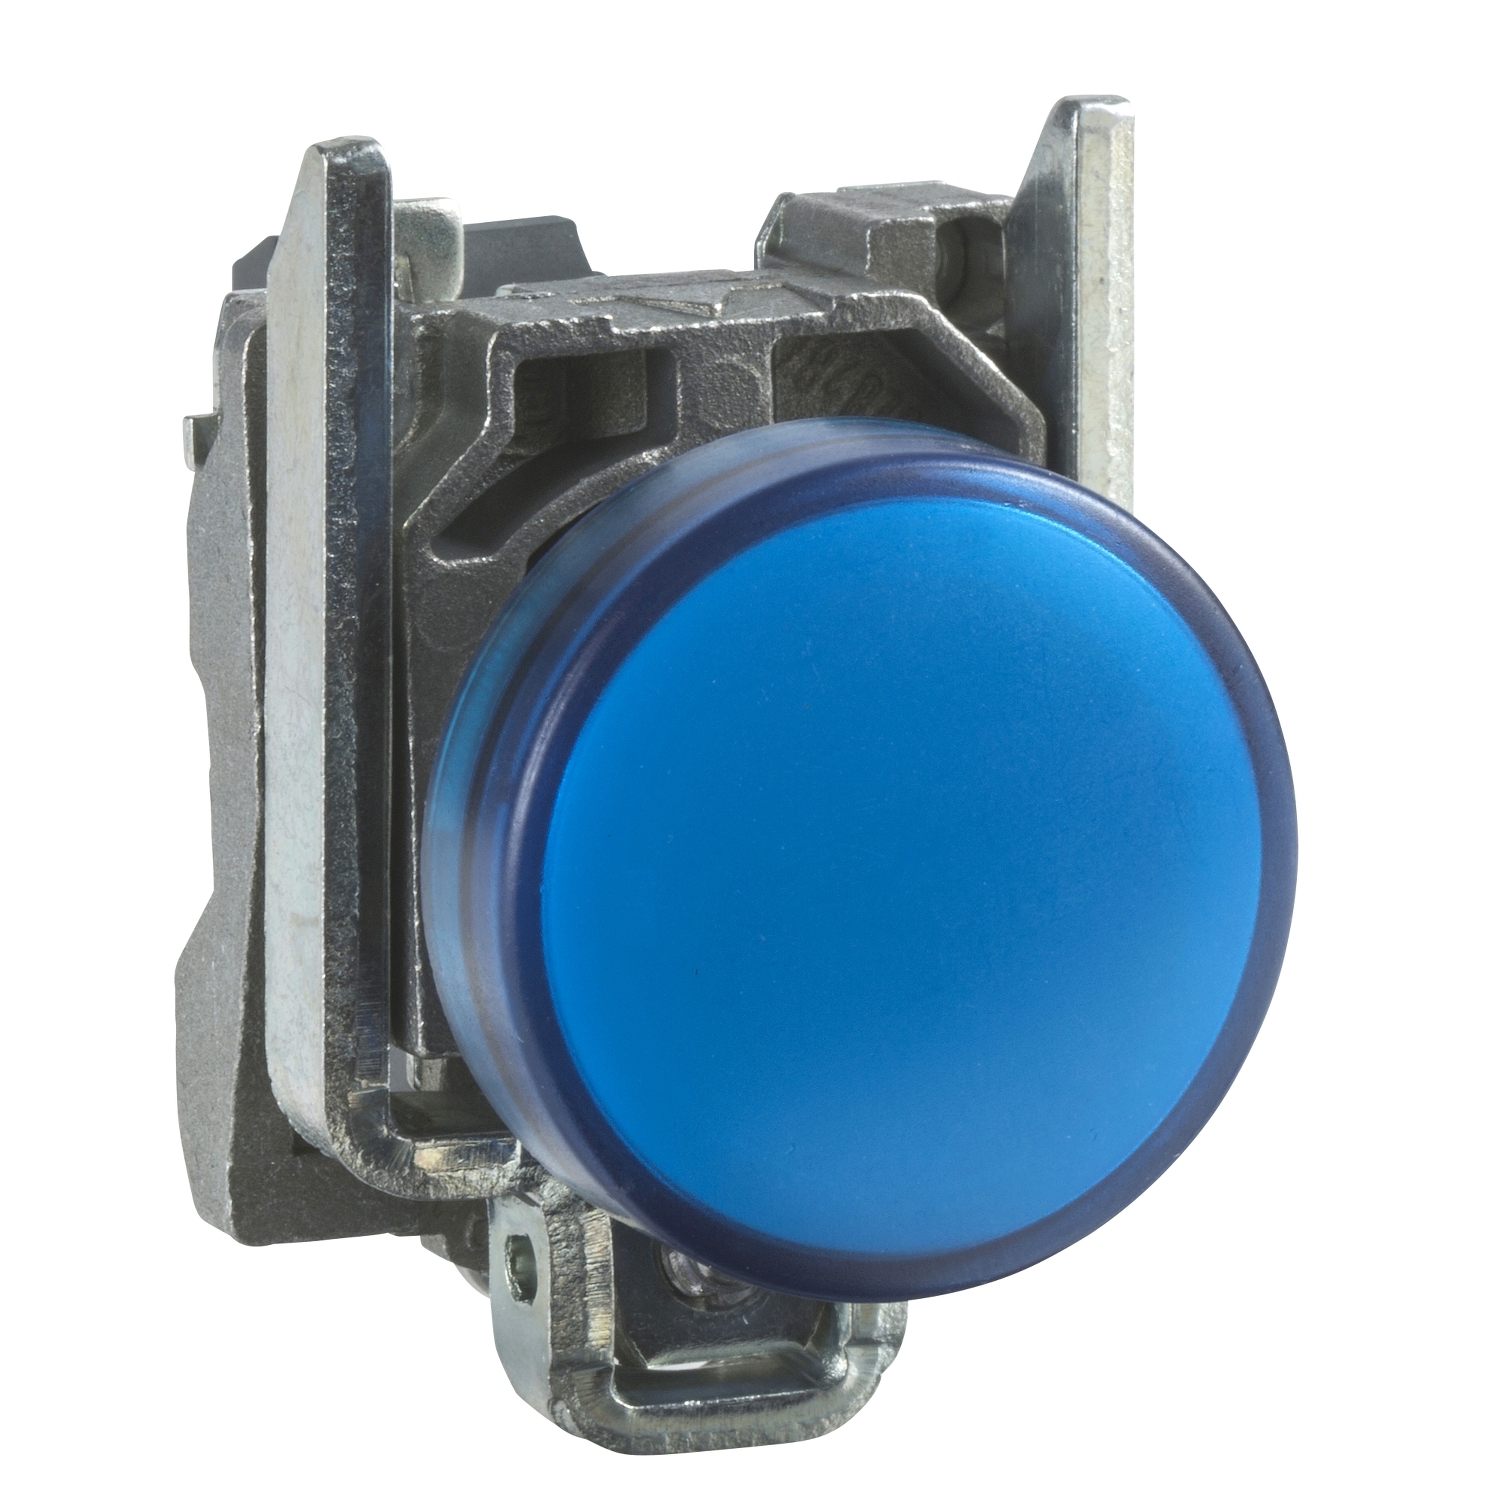 Pilot light, Harmony XB4, grey plastic, blue, 22mm, universal LED, plain lens, 24V AC DC